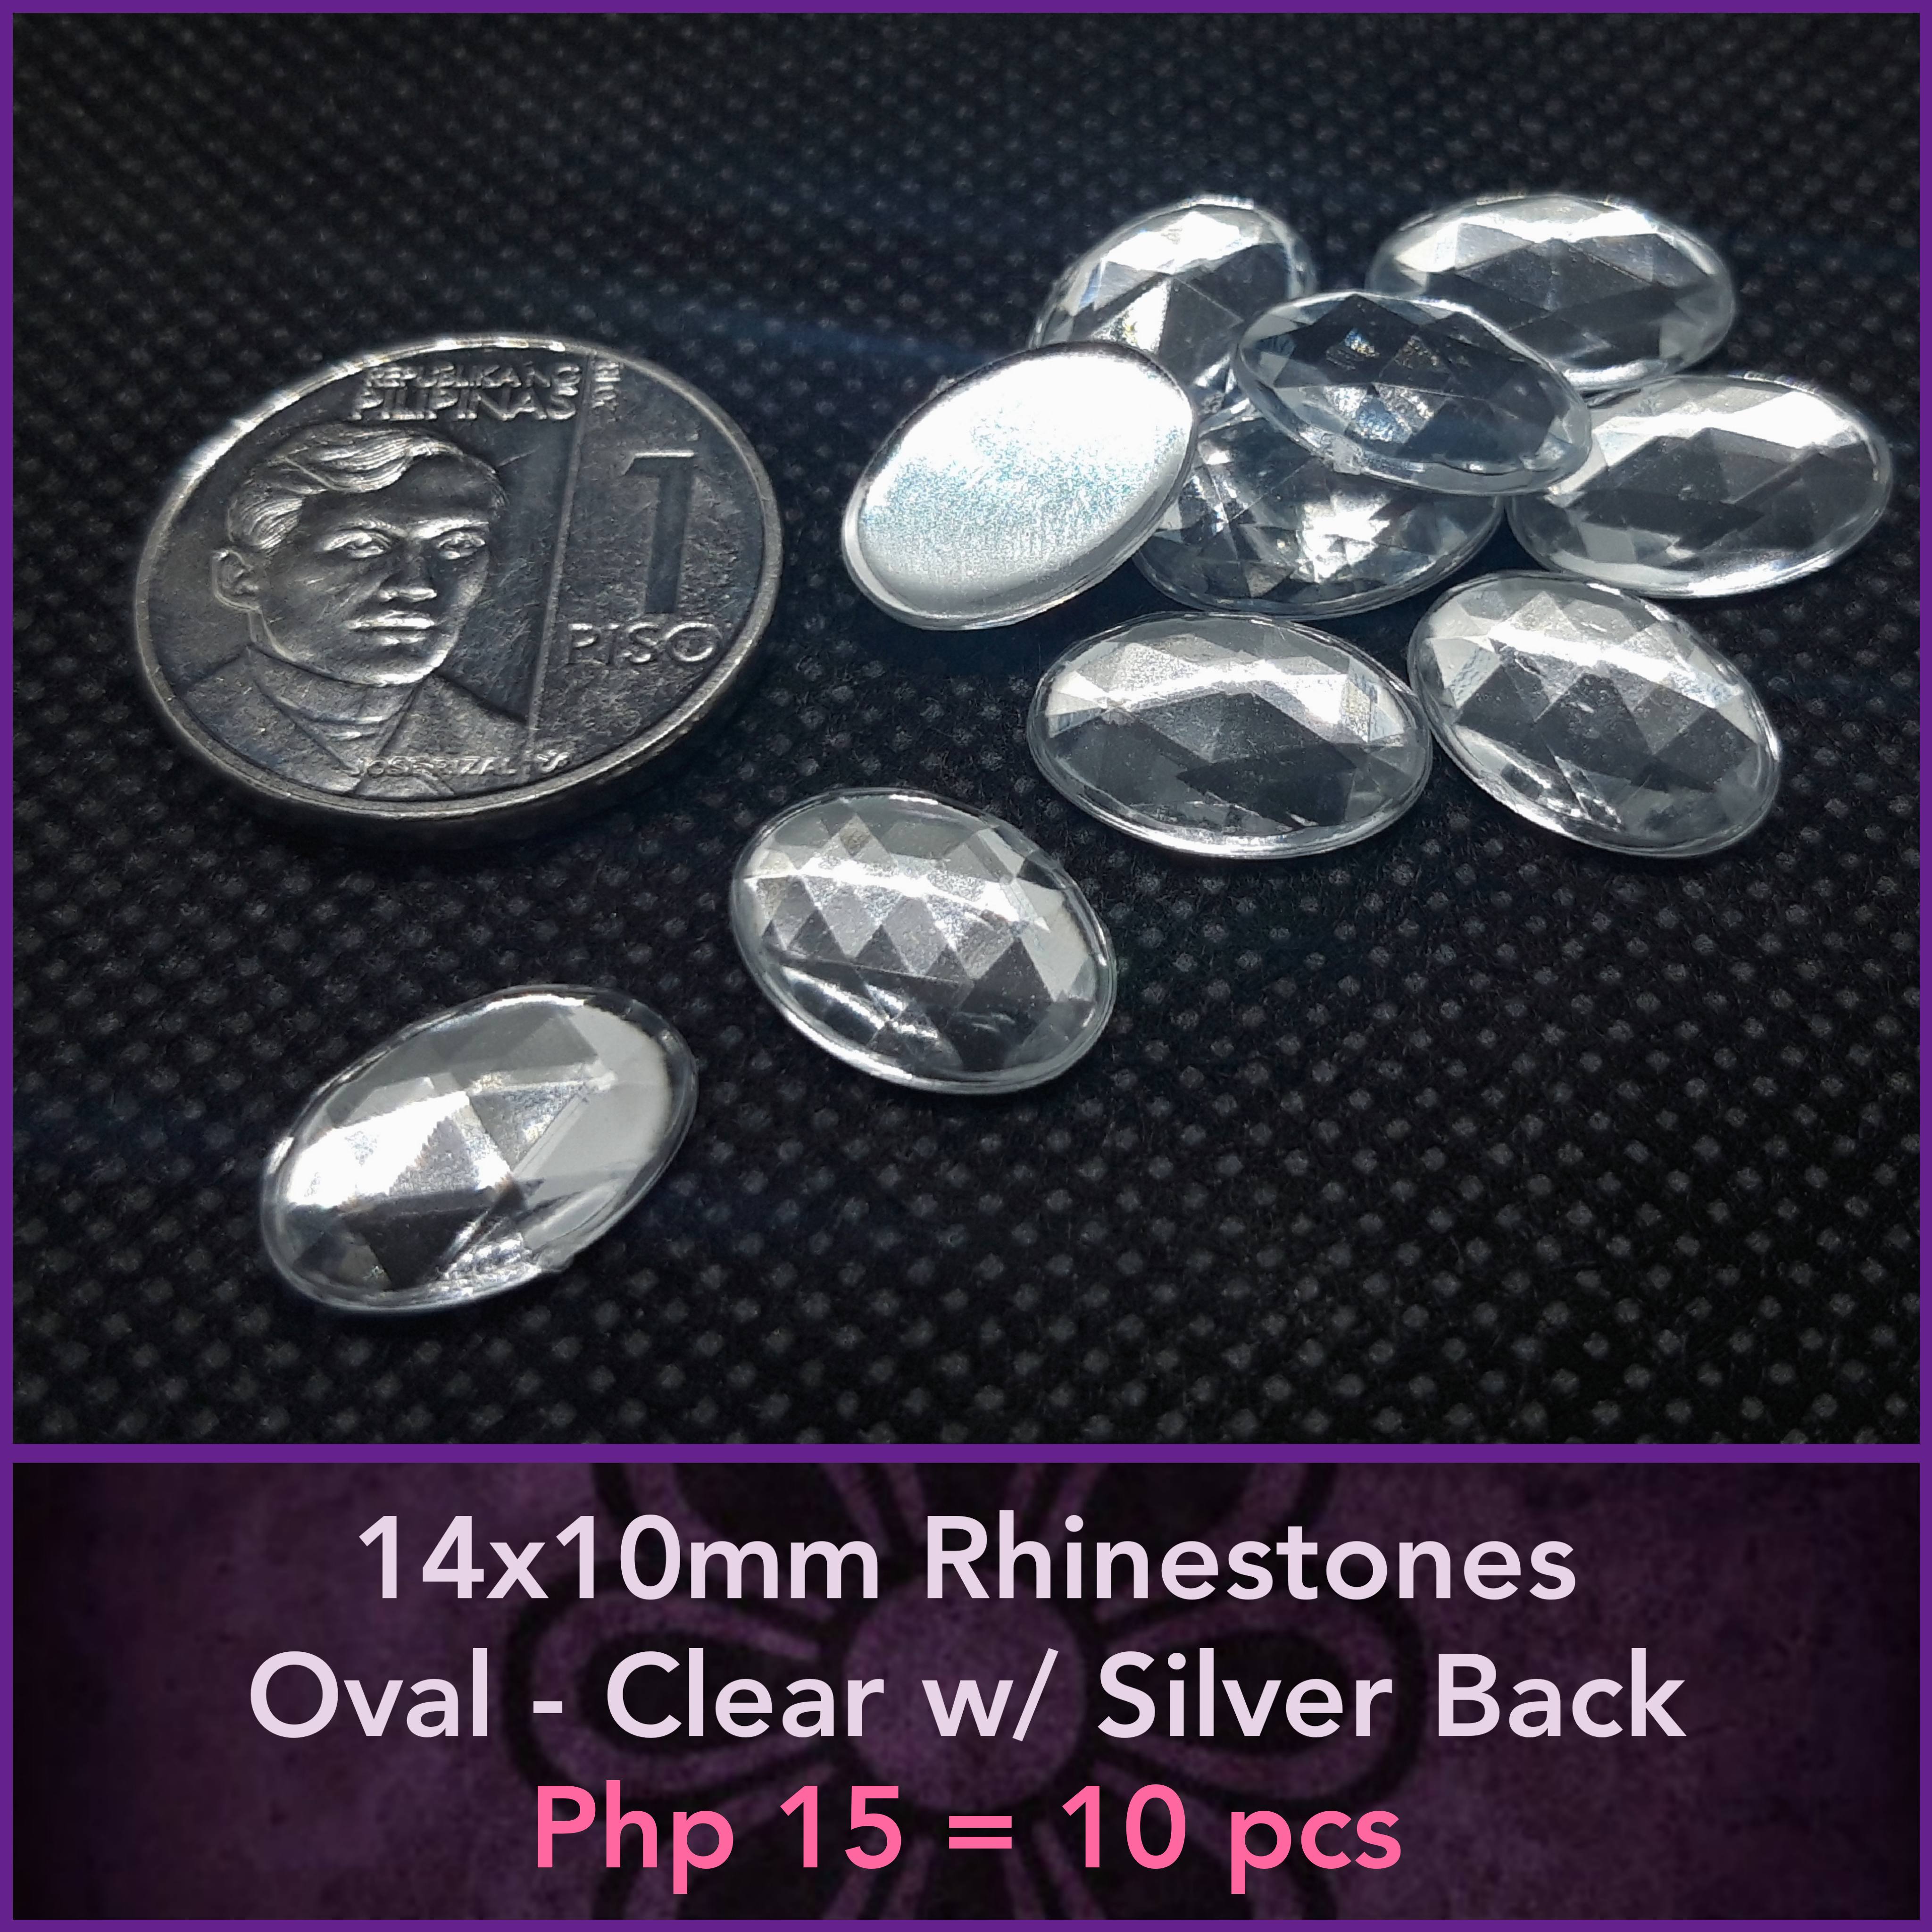 3mm Rhinestones - Clear w/ Silver Back (100pcs)